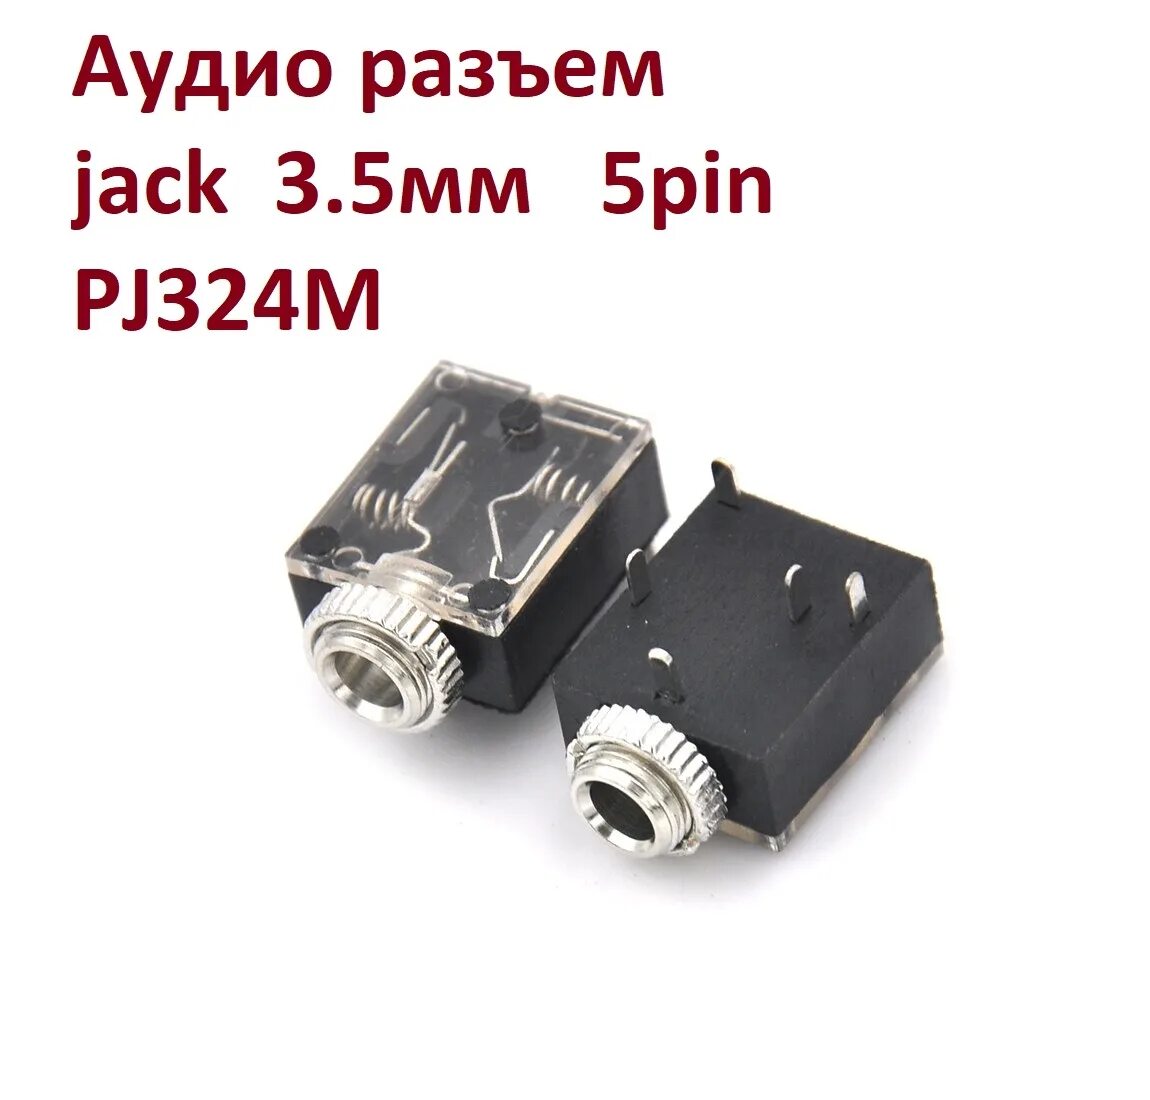 Разъем Jack 3,5 мм, стерео,"гнездо". 3.5Mm stereo Connector. 3.5 Jack гнездо разъём. Разъем аудио Jack стерео 3.5mm. Разъем для наушников купить